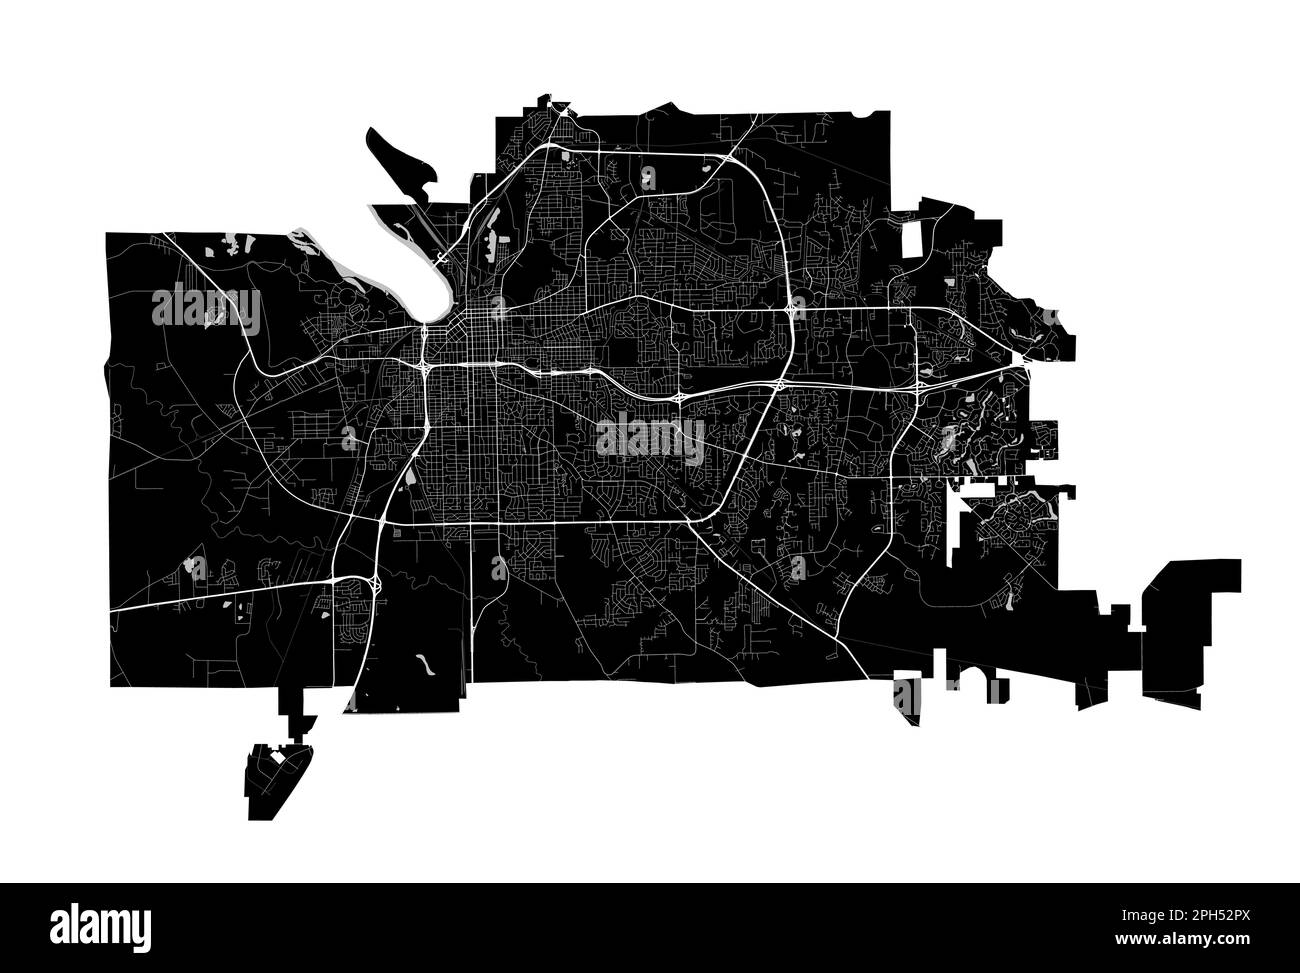 Montgomery, Alabama mappa. Mappa nera dettagliata dell'area amministrativa della città di Montgomery. Poster sulla città con vista metropolitana sull'aria. Terra nera con roa bianca Illustrazione Vettoriale